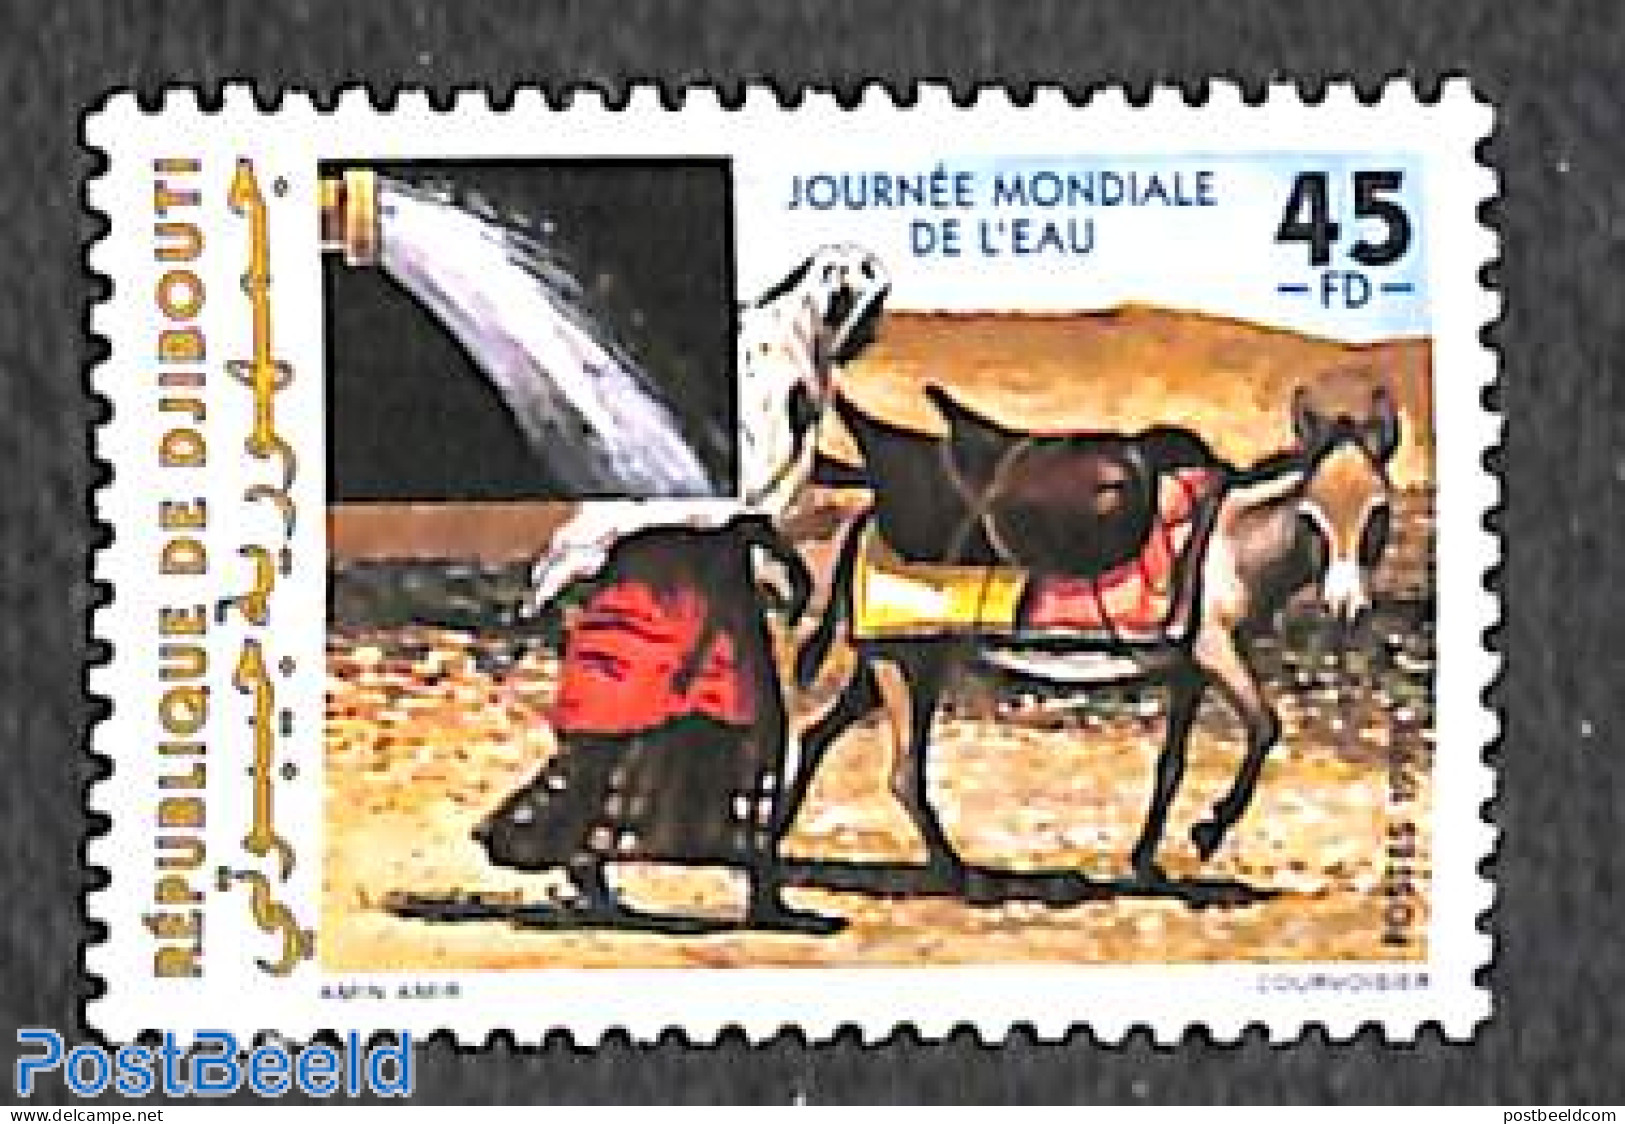 Djibouti 1998 Int. Water Day 1v, Mint NH, Nature - Cattle - Water, Dams & Falls - Djibouti (1977-...)